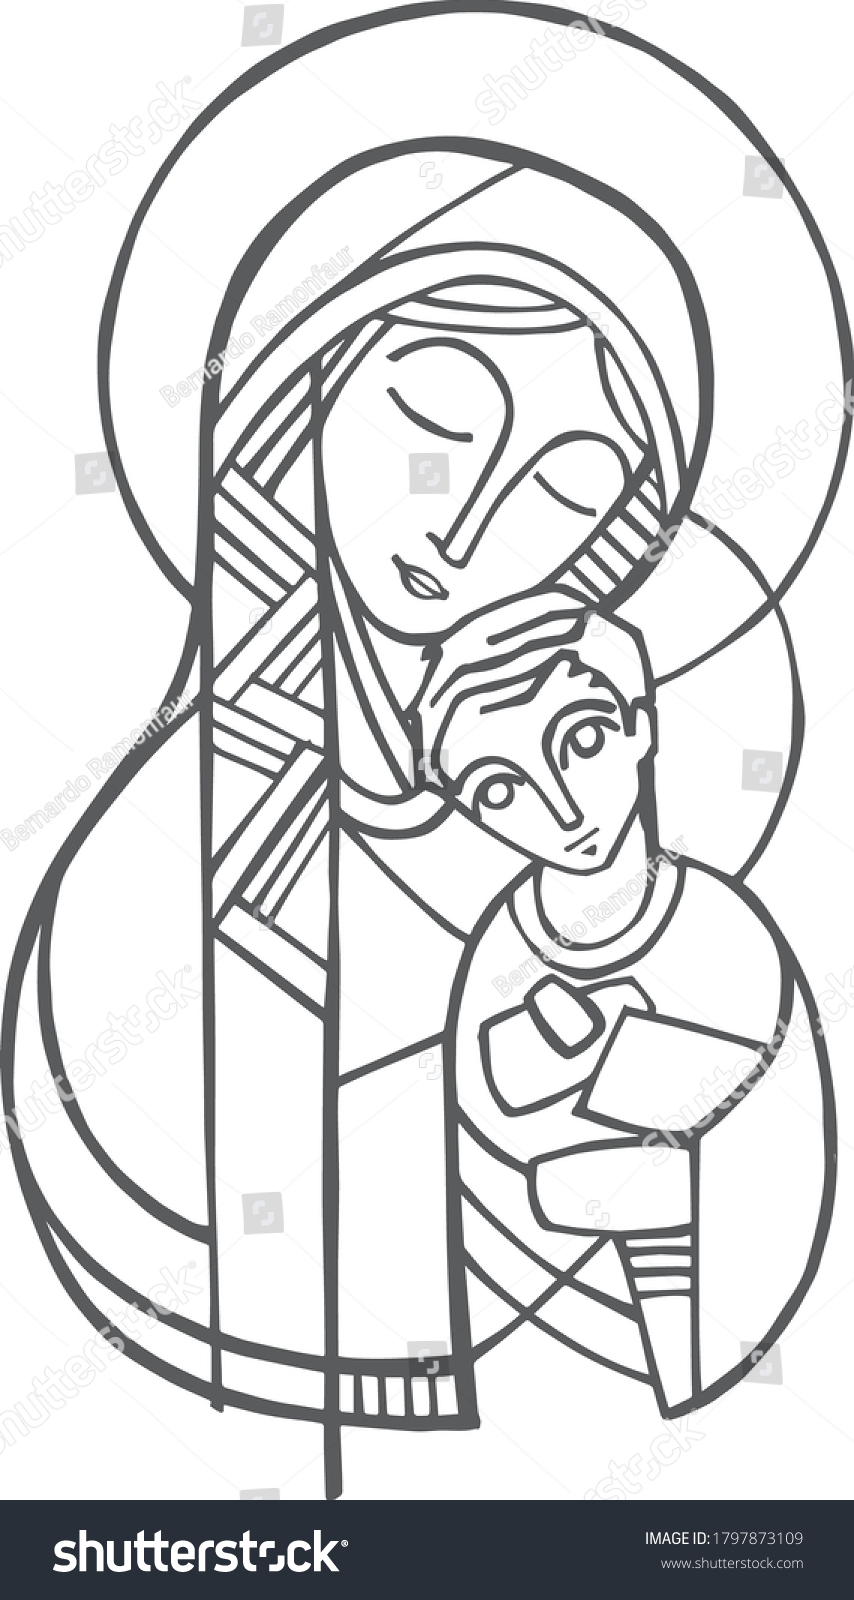 Digital Illustration Drawing Virgin Mary Jesus Stock Vector (Royalty ...